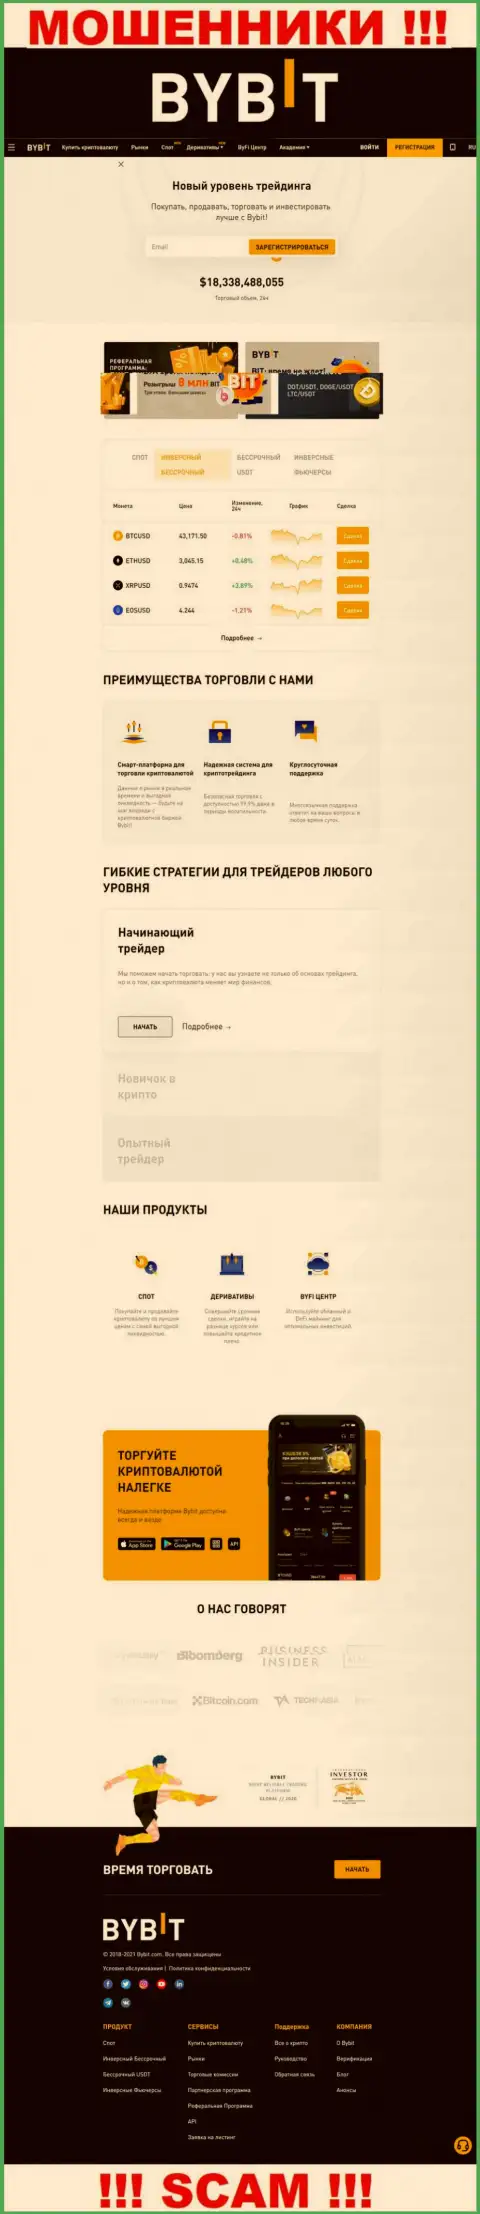 Основная страничка официального веб-ресурса мошенников БайБит Ком